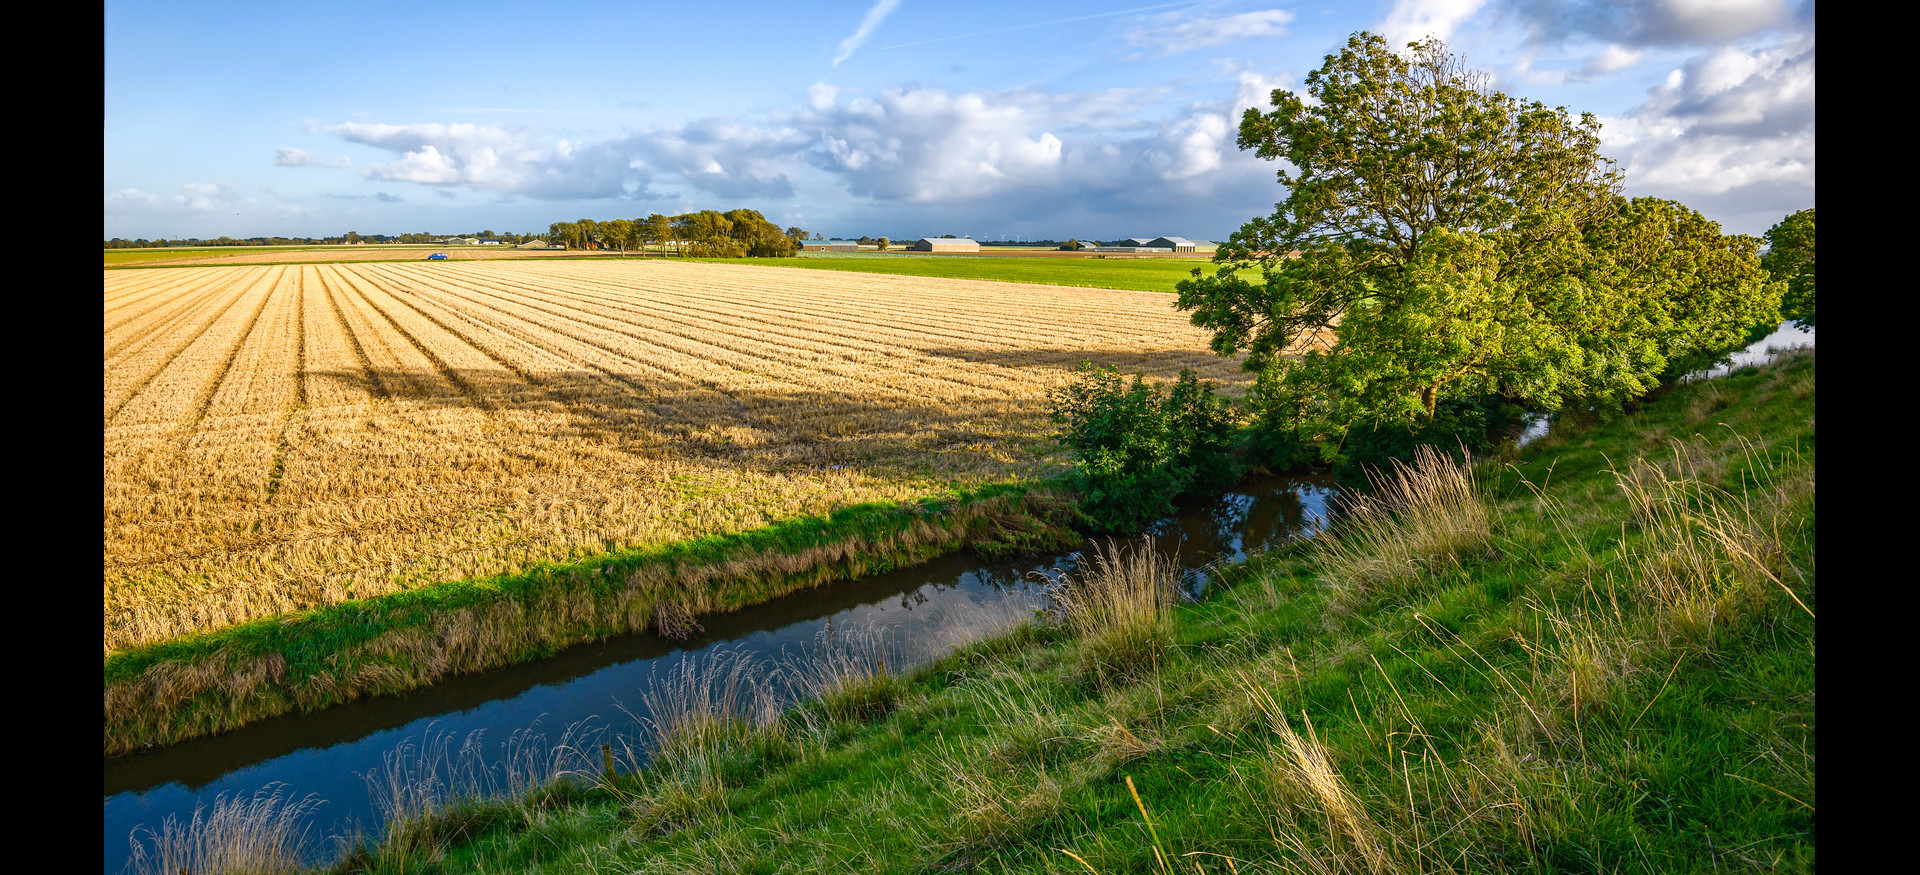 Foto: Getreidefeld, das bis an die Uferkante eines sehr geradlinig verlaufenden Baches heranreicht.